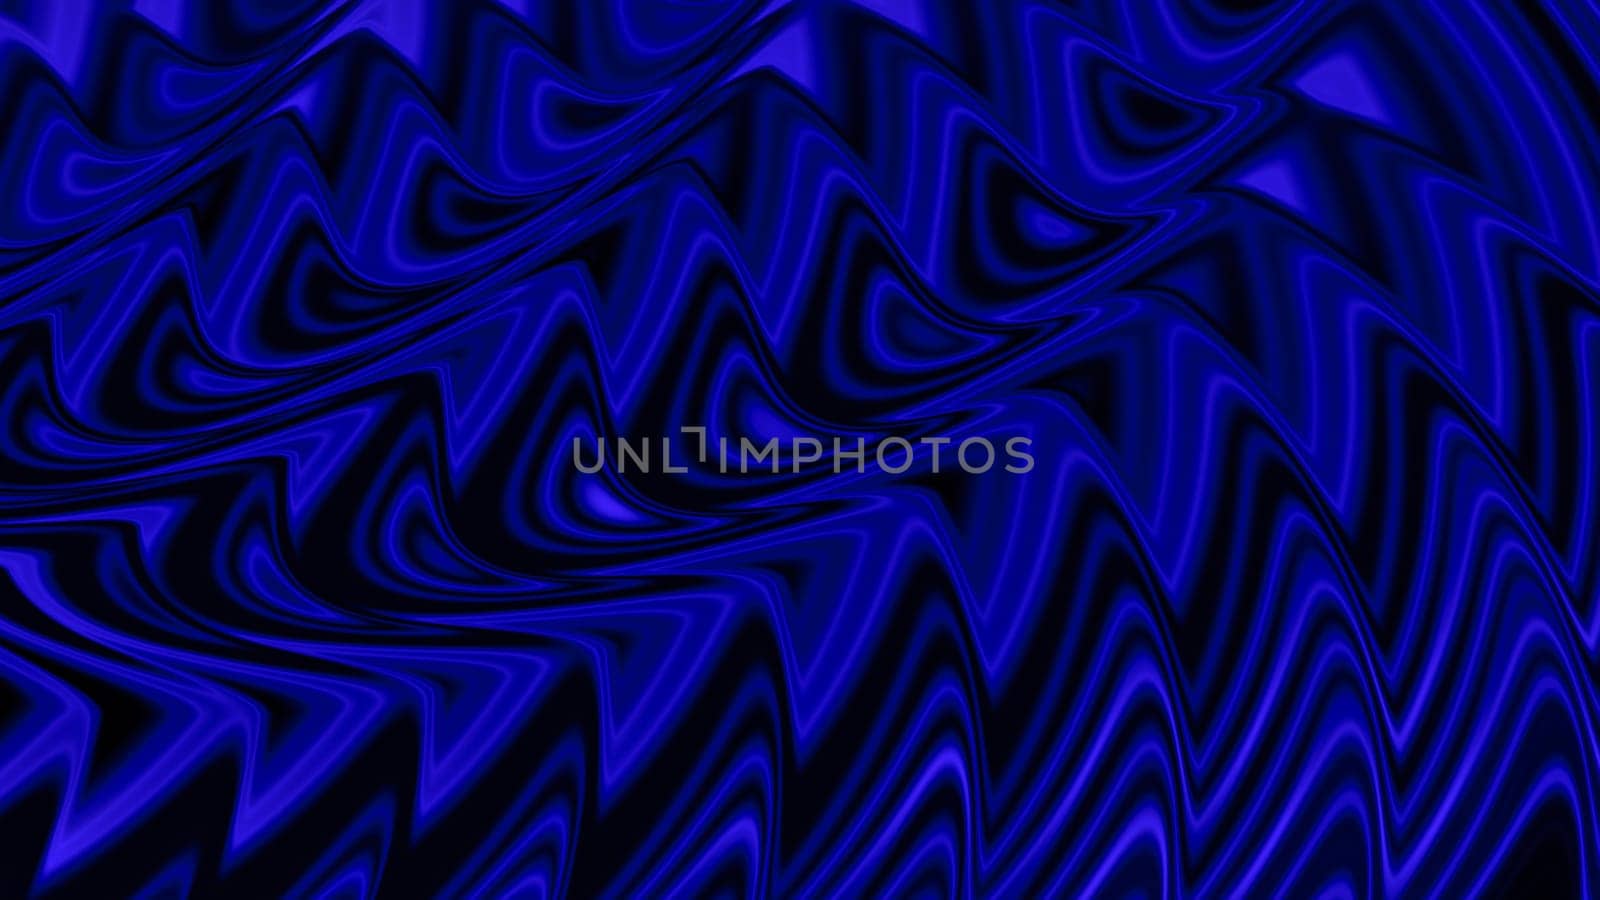 Multi-row, wavy blue pattern.